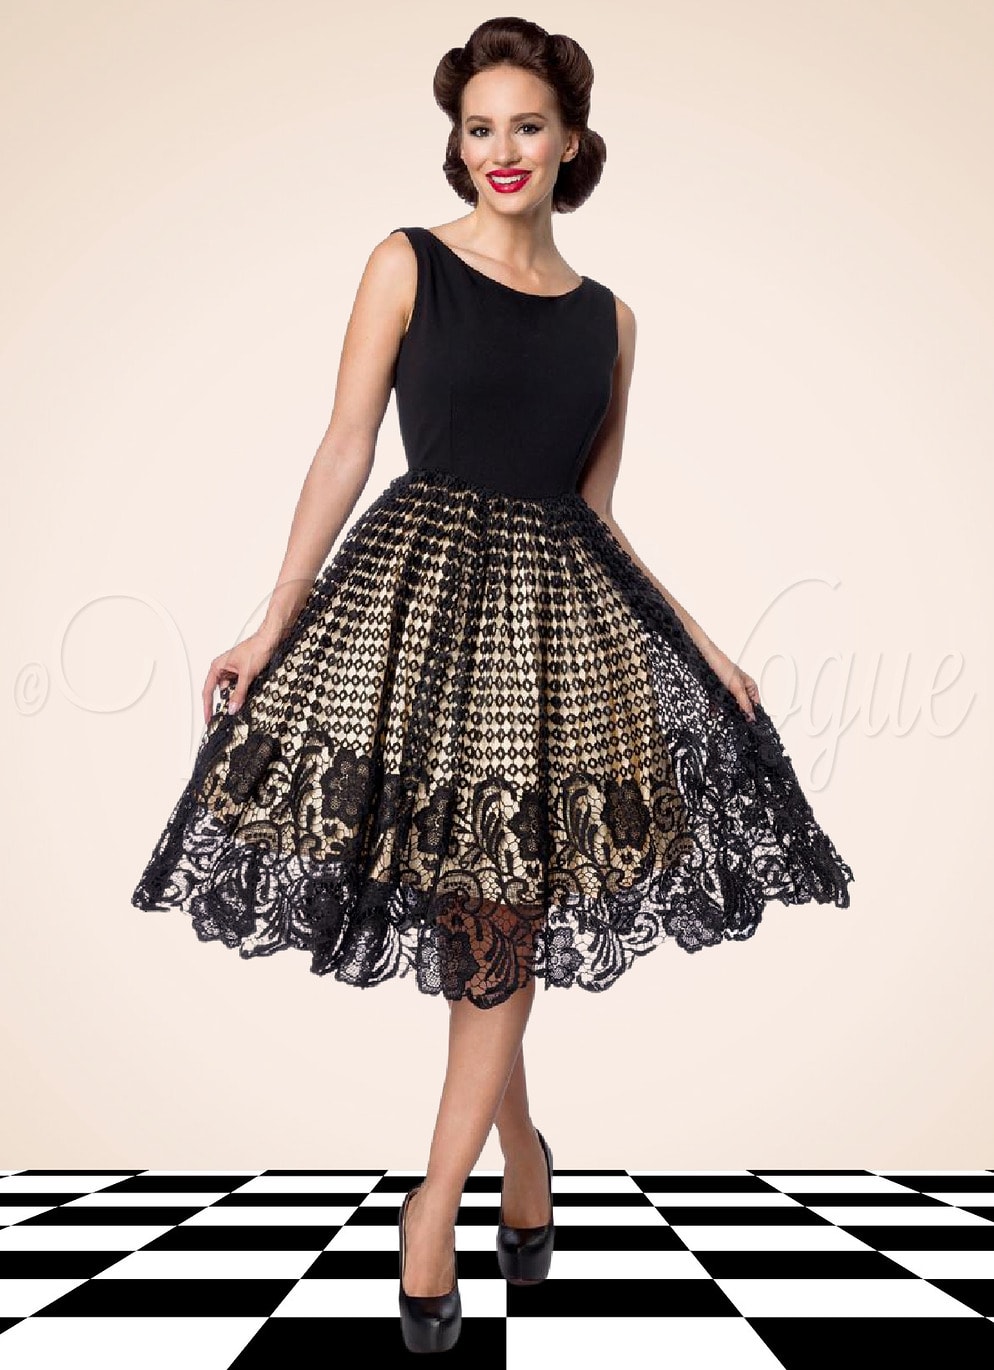 Belsira 50er Jahre Vintage Retro Swing Spitzen Kleid in Schwarz & Creme Petticoat Damen Damenkleid Spitzenkleid Winterkleid elegant Abendkleid festlich Gothic